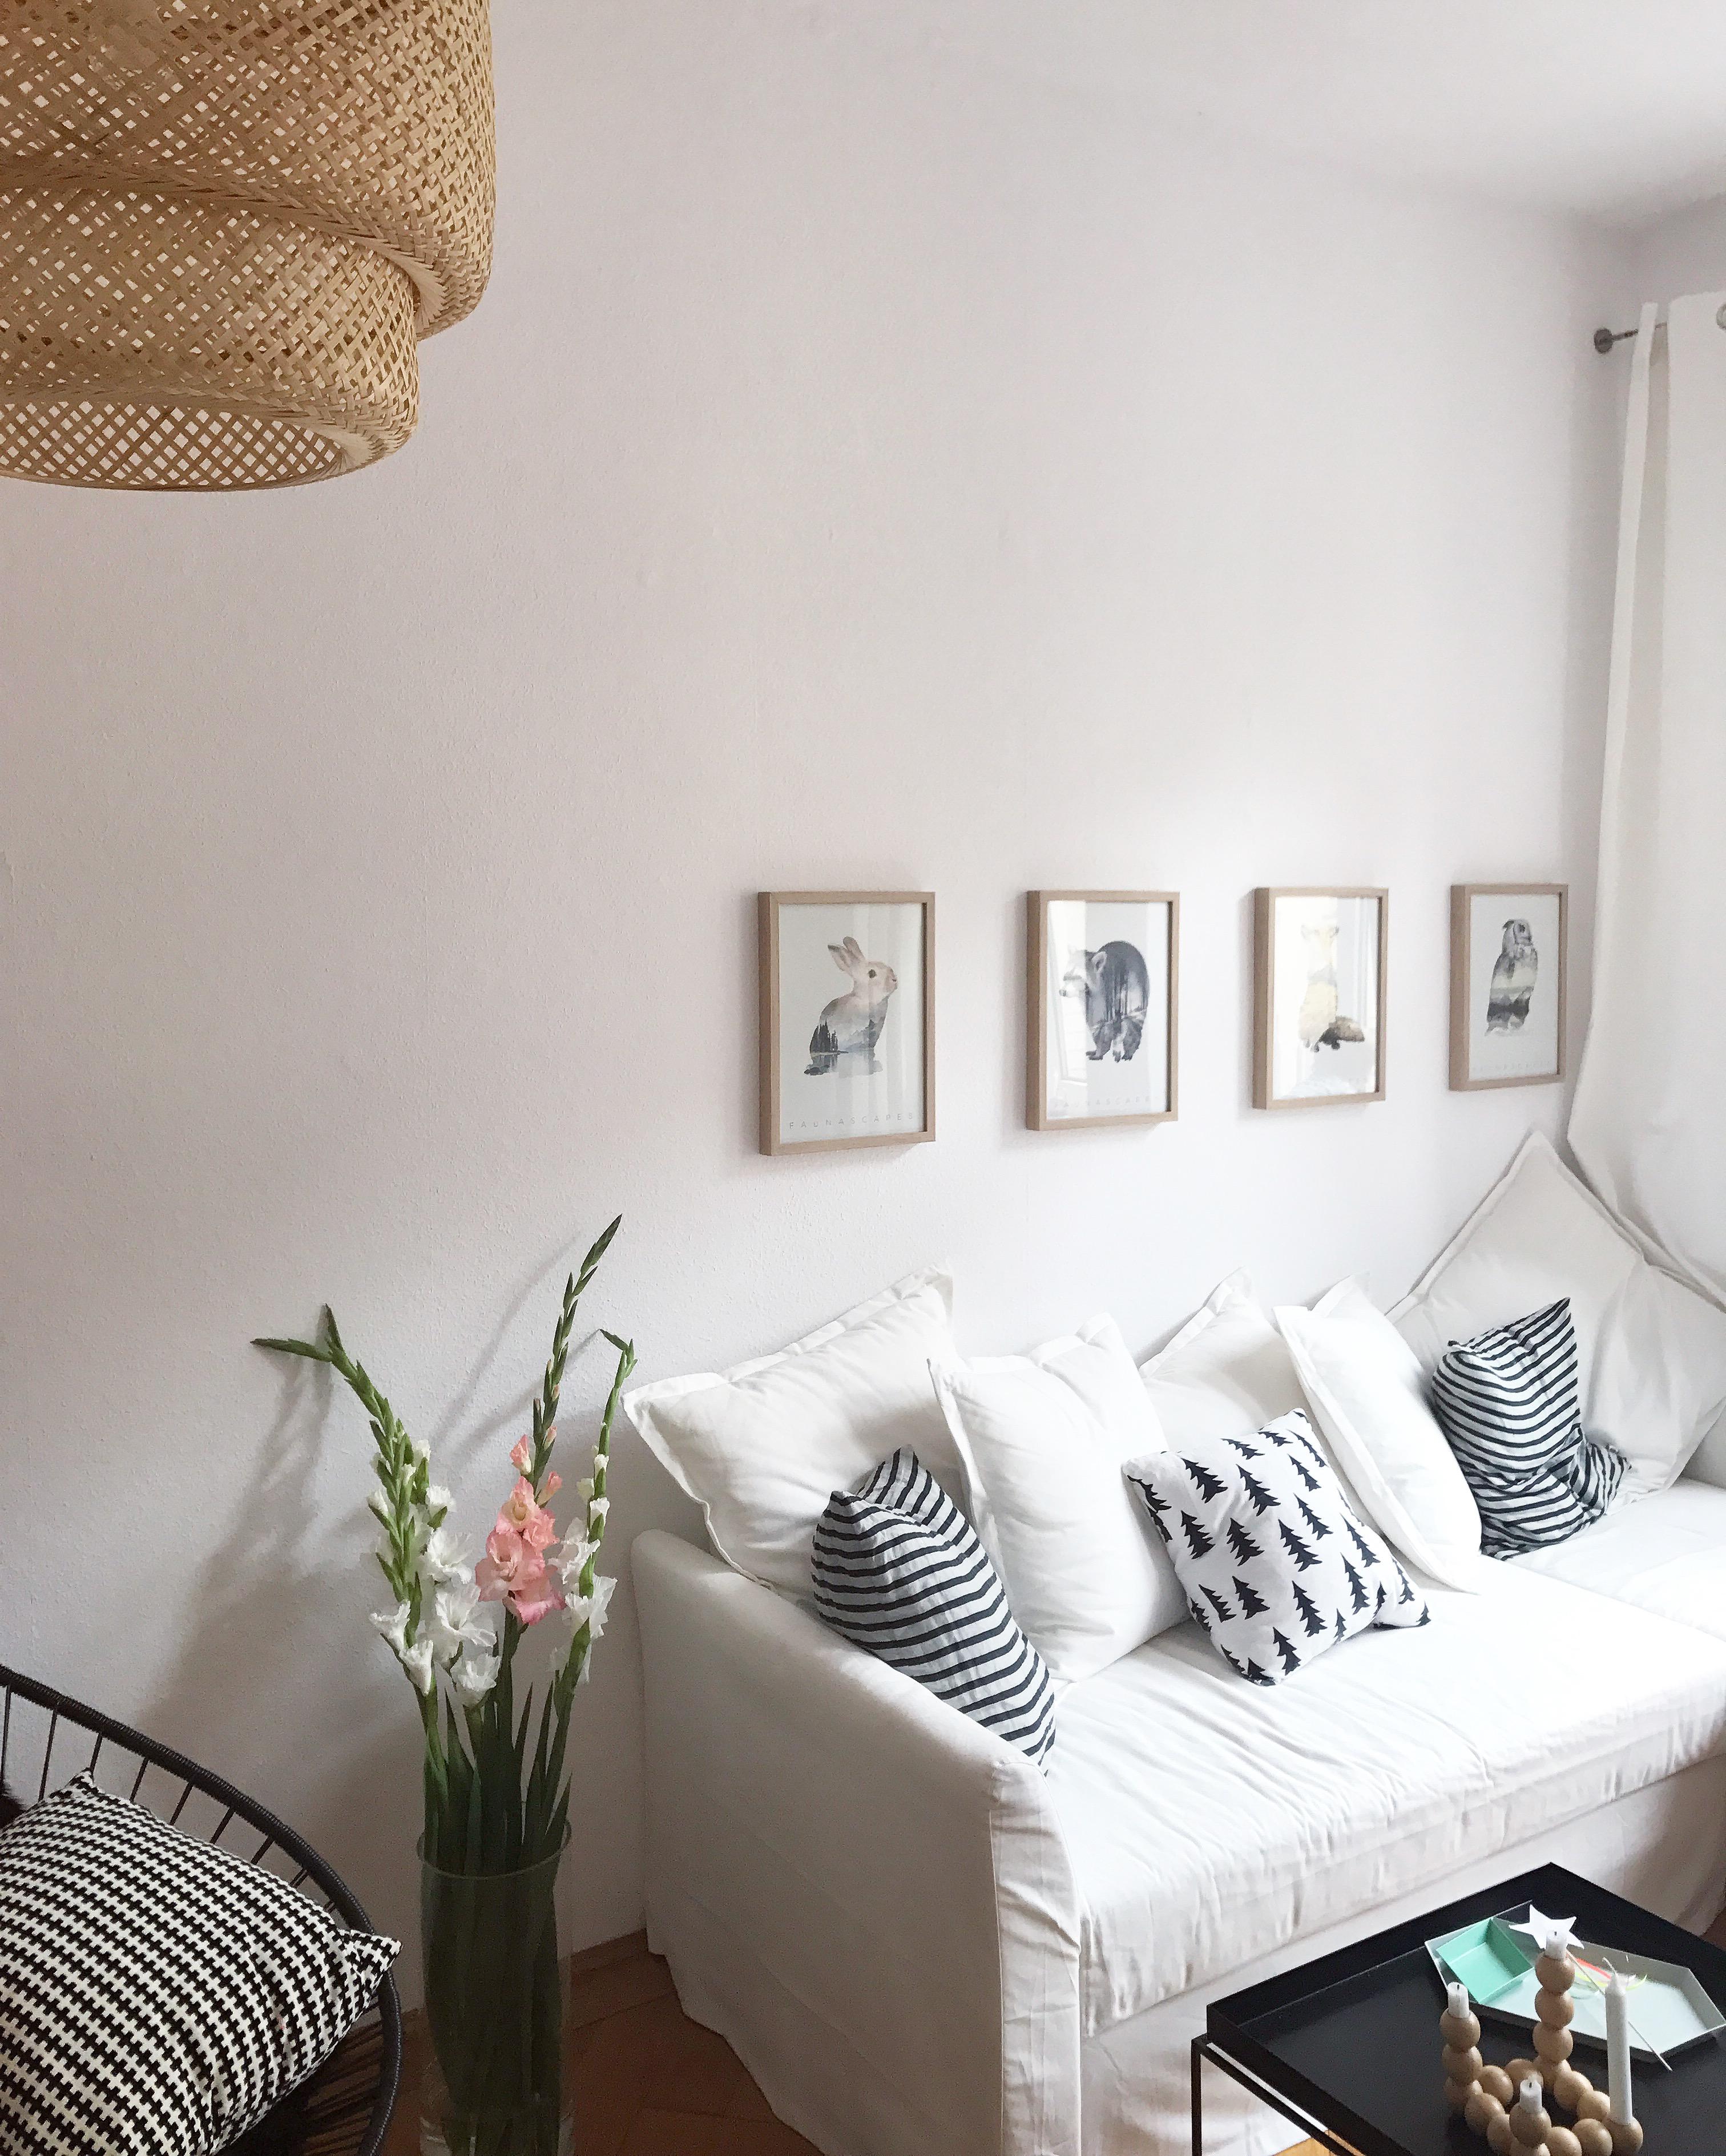 FlowerPower

#wohnzimmer #livingroom #blumen #blumendeko #wanddeko #bilder #sofa #couchstyle 